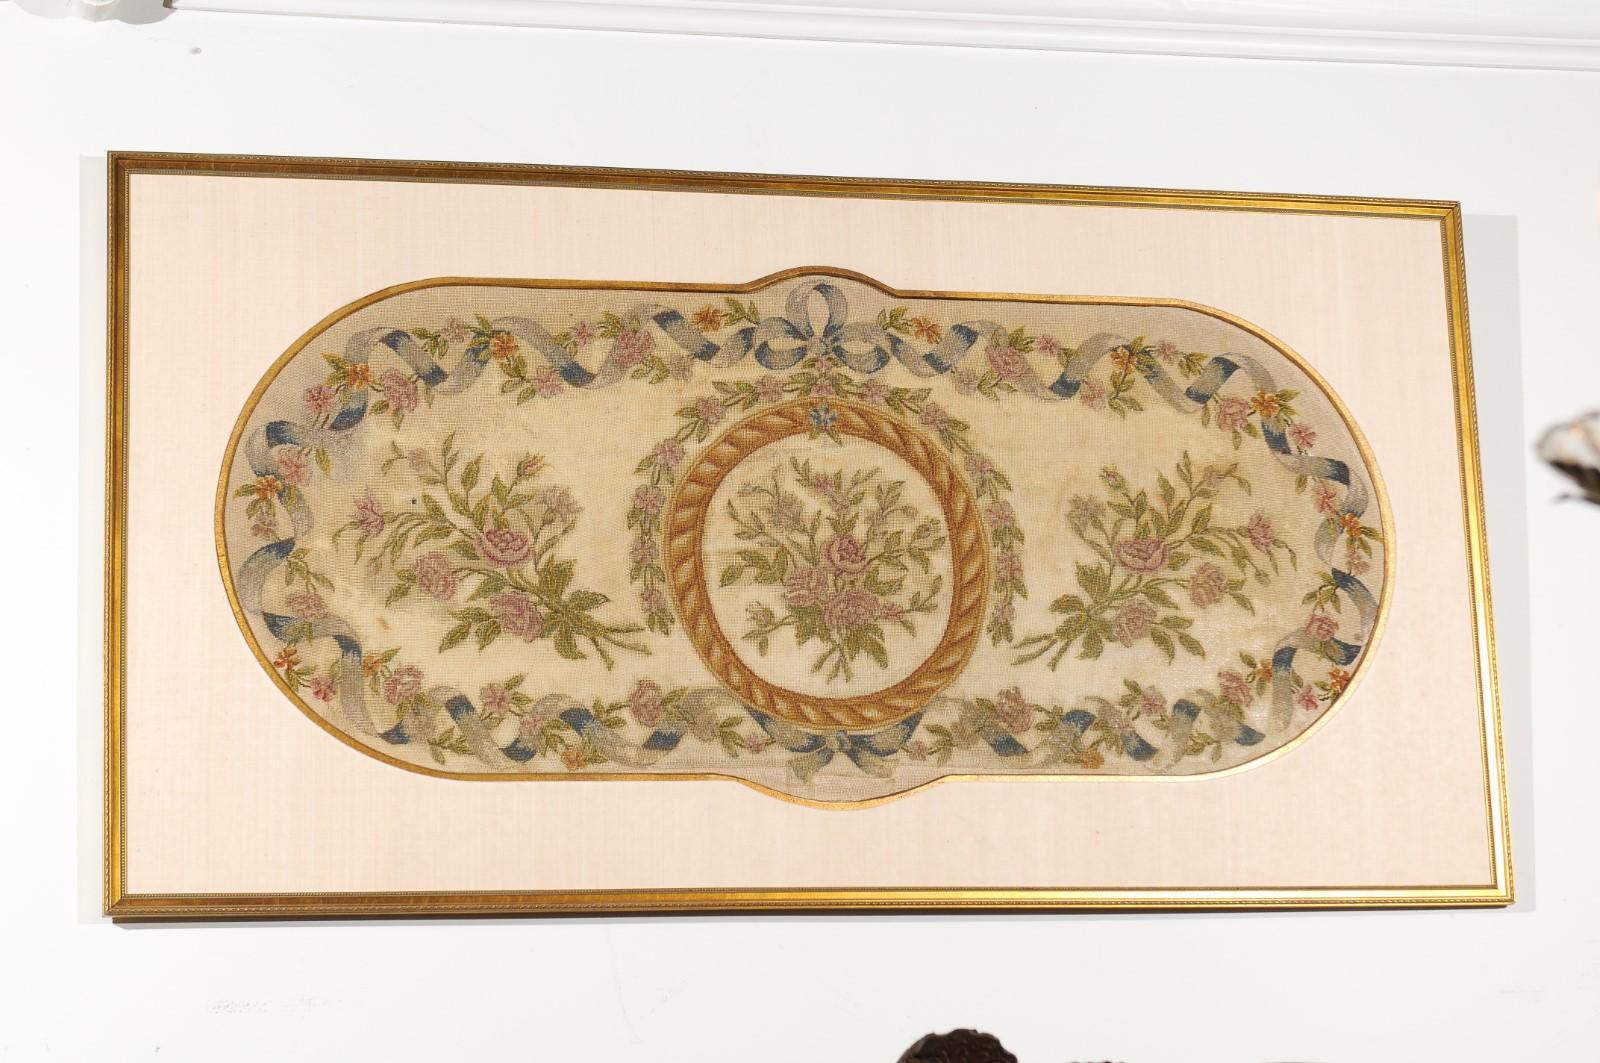 Ein französischer gerahmter Wandteppich aus dem 19. Jahrhundert mit Band- und Blumenmotiven. In einem schlichten, aber eleganten vergoldeten Rahmen mit Passepartout und vergoldetem Rand präsentiert sich diese schöne horizontale Nadelspitze in einer